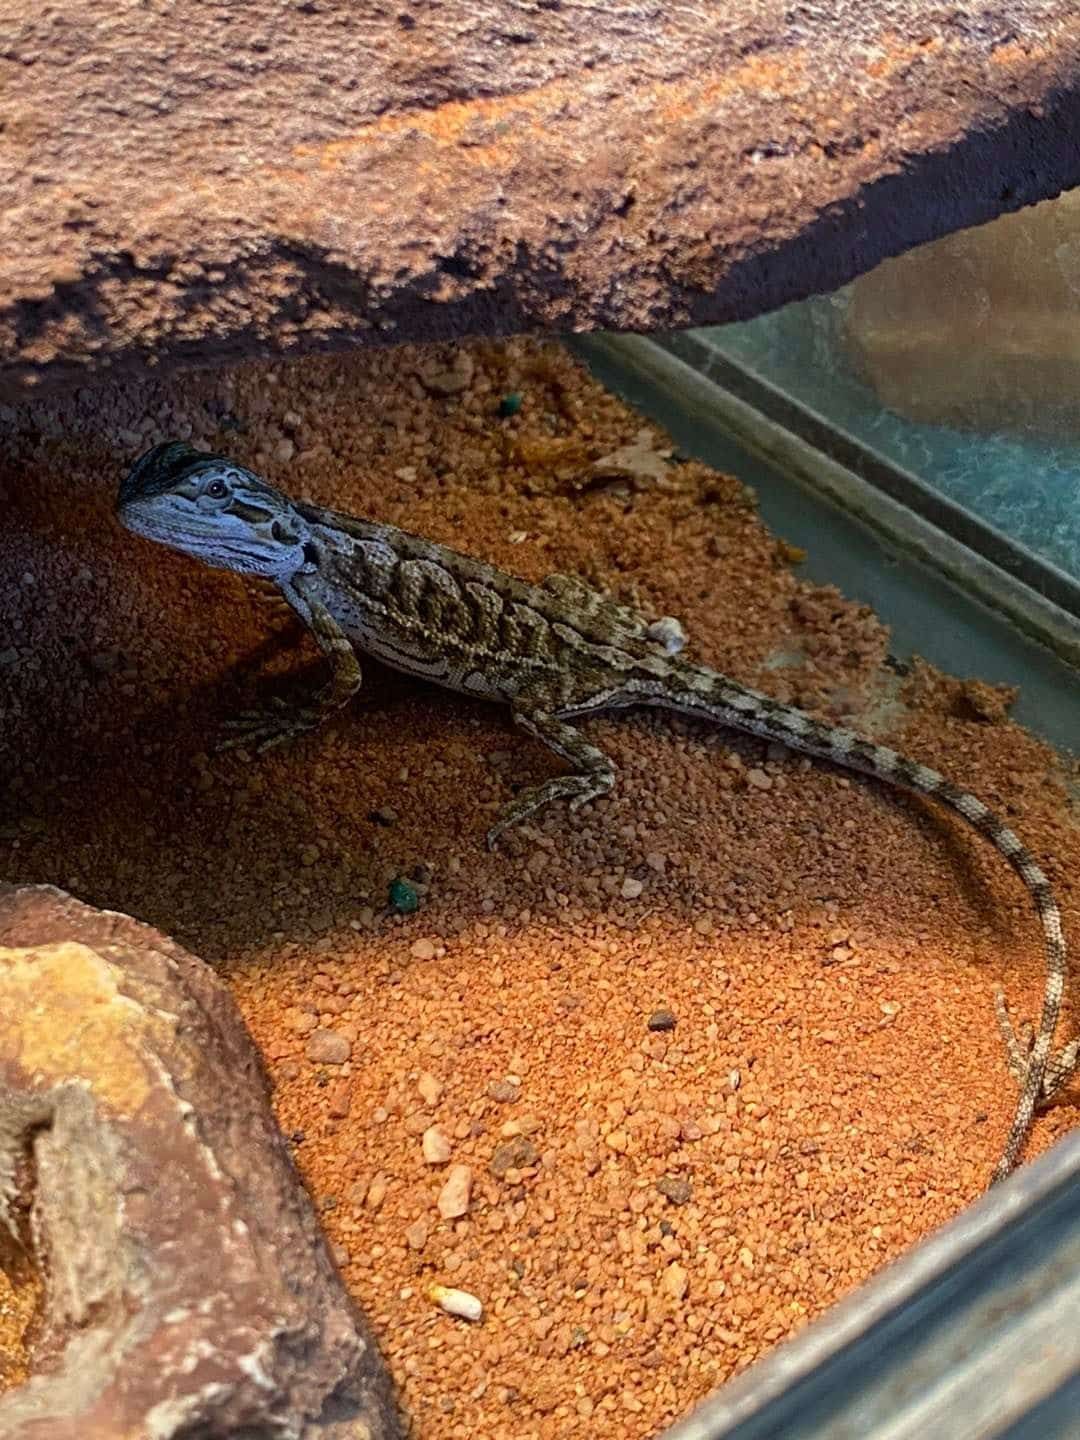 Lizard in Sand - Pet Supplies in Mackay